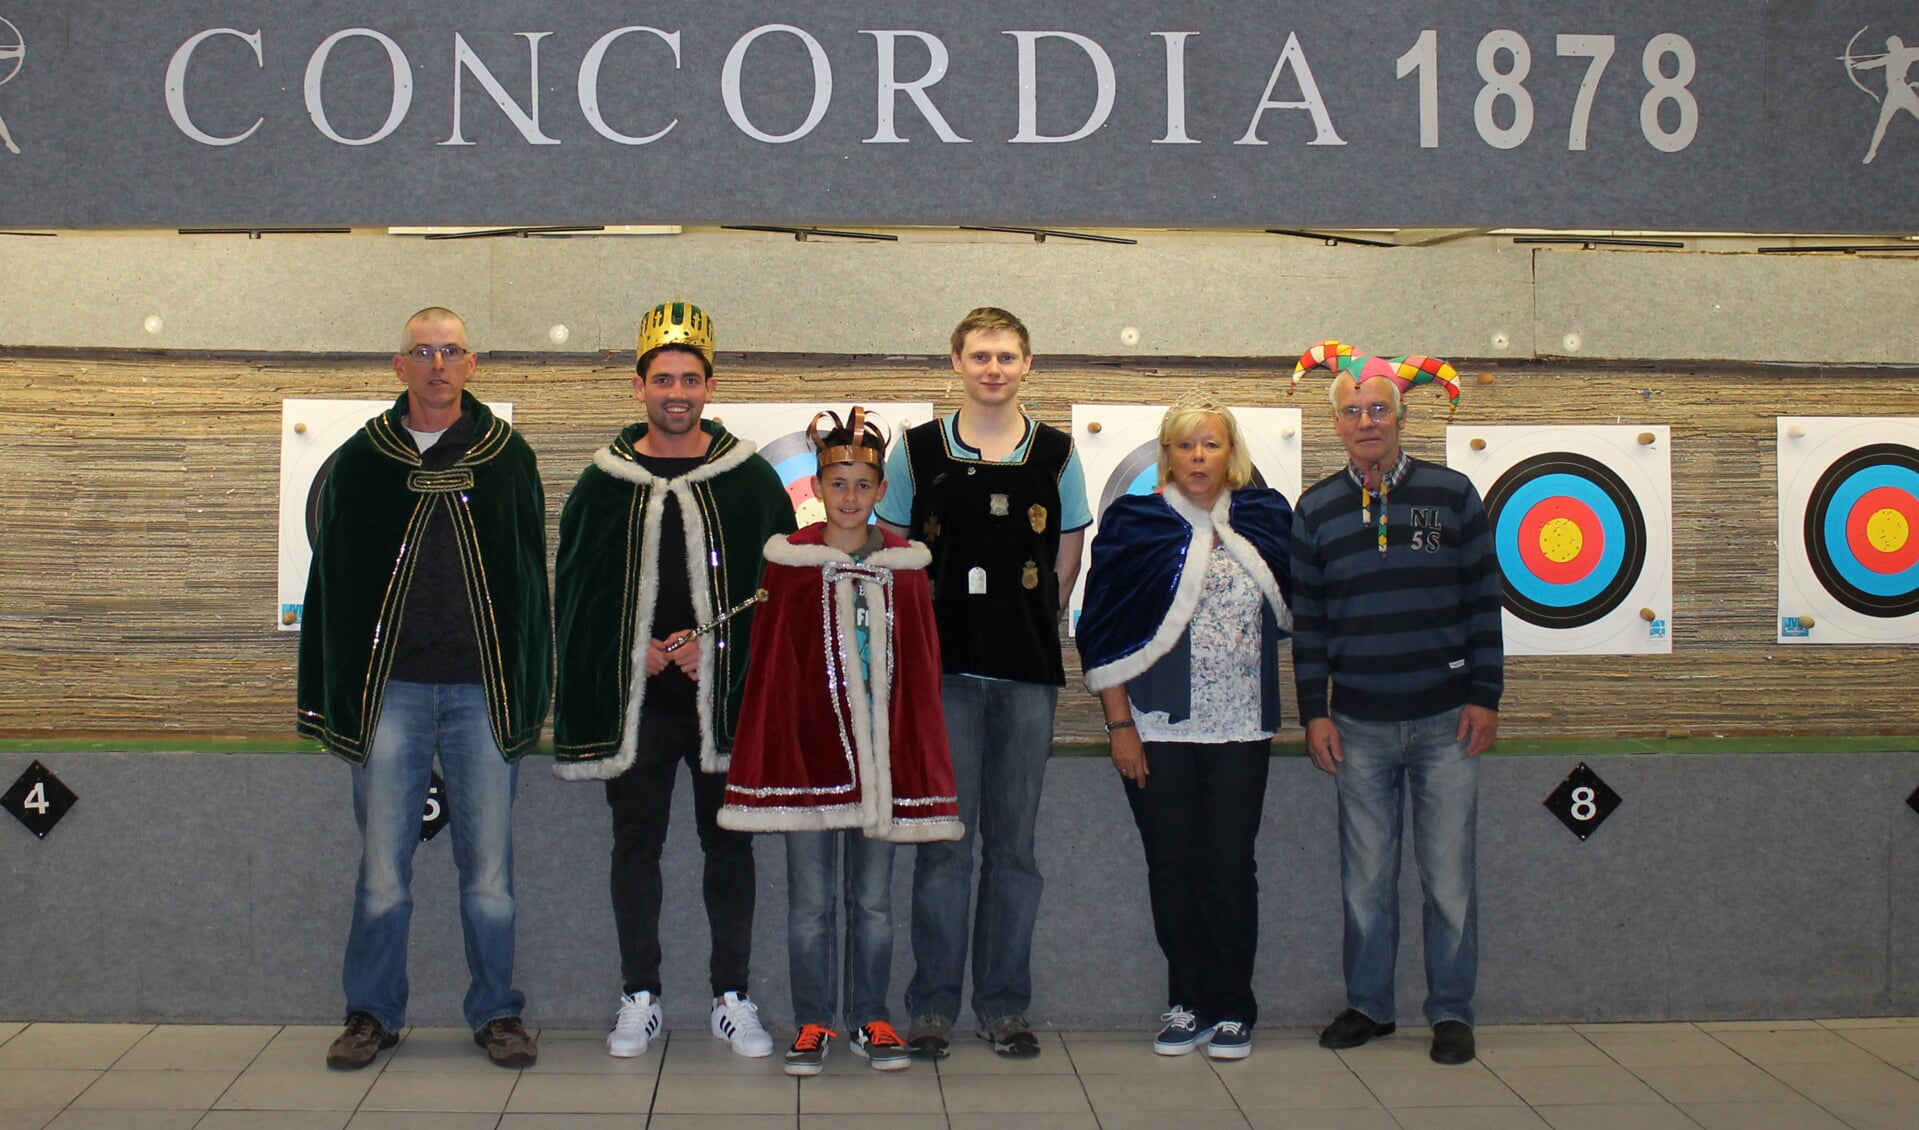 De winnaars van Concordia 